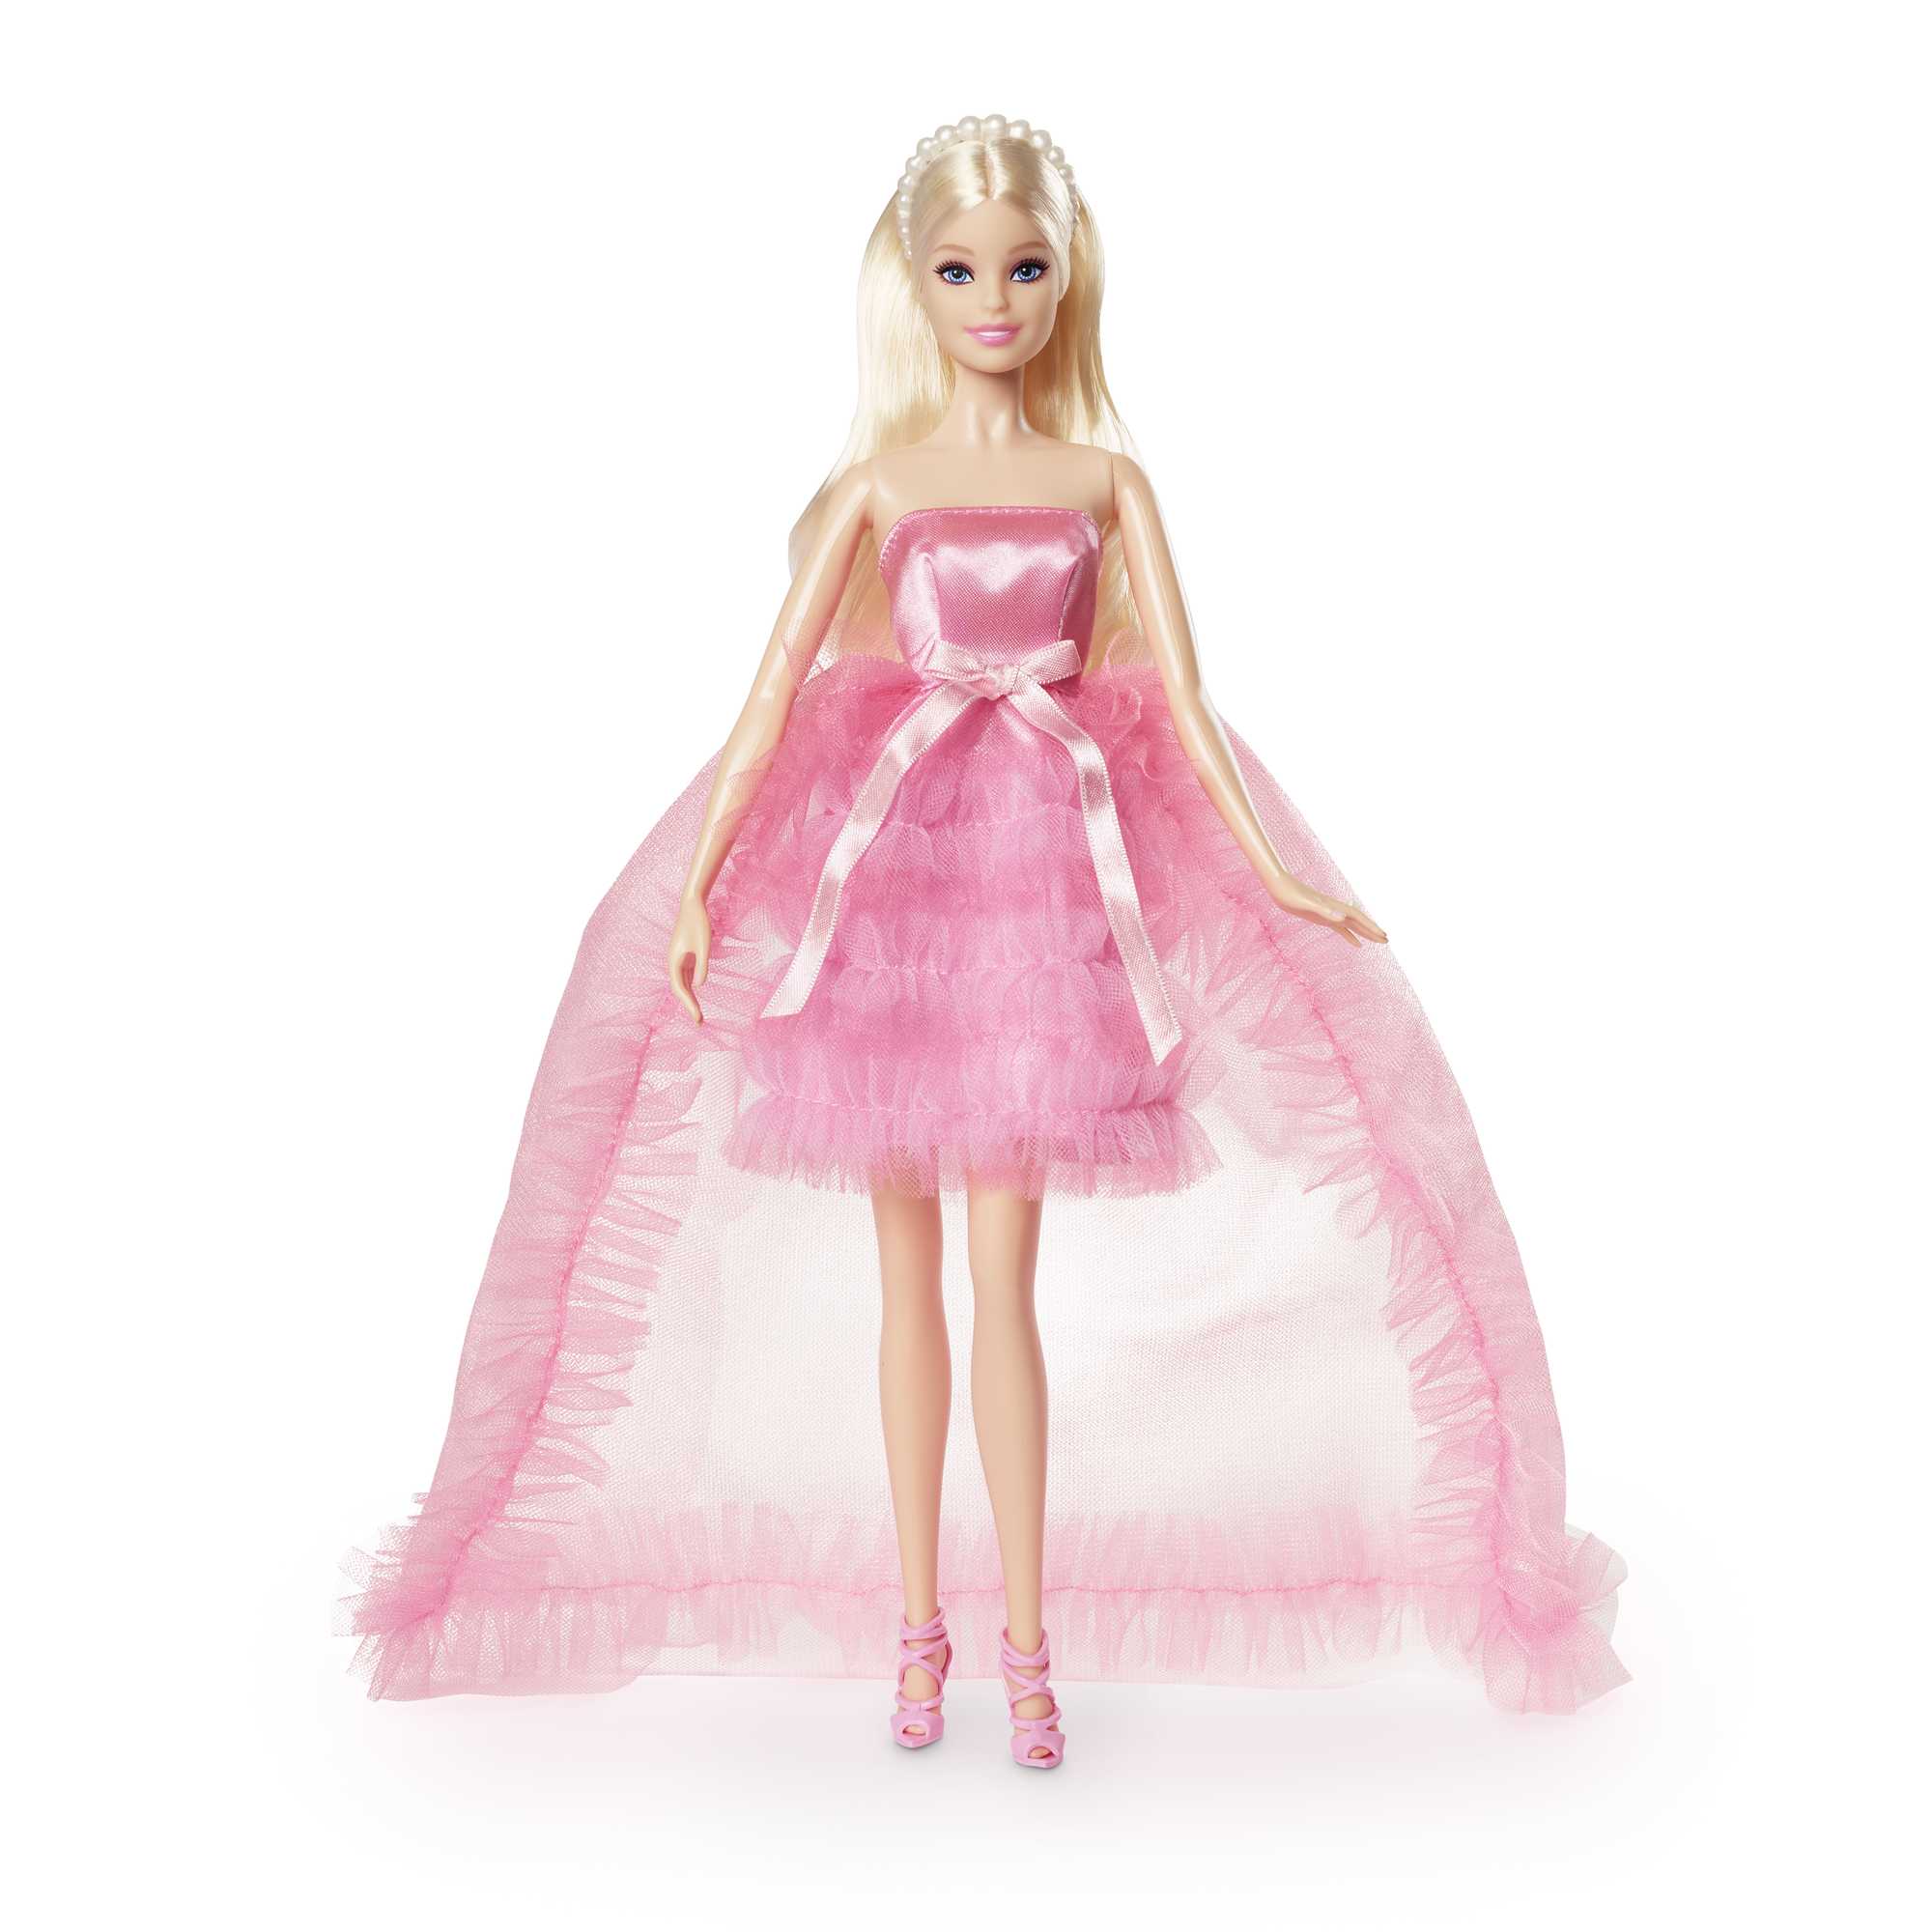 Barbie Doll | Blonde in Pink Dress | Birthday Gift | MATTEL